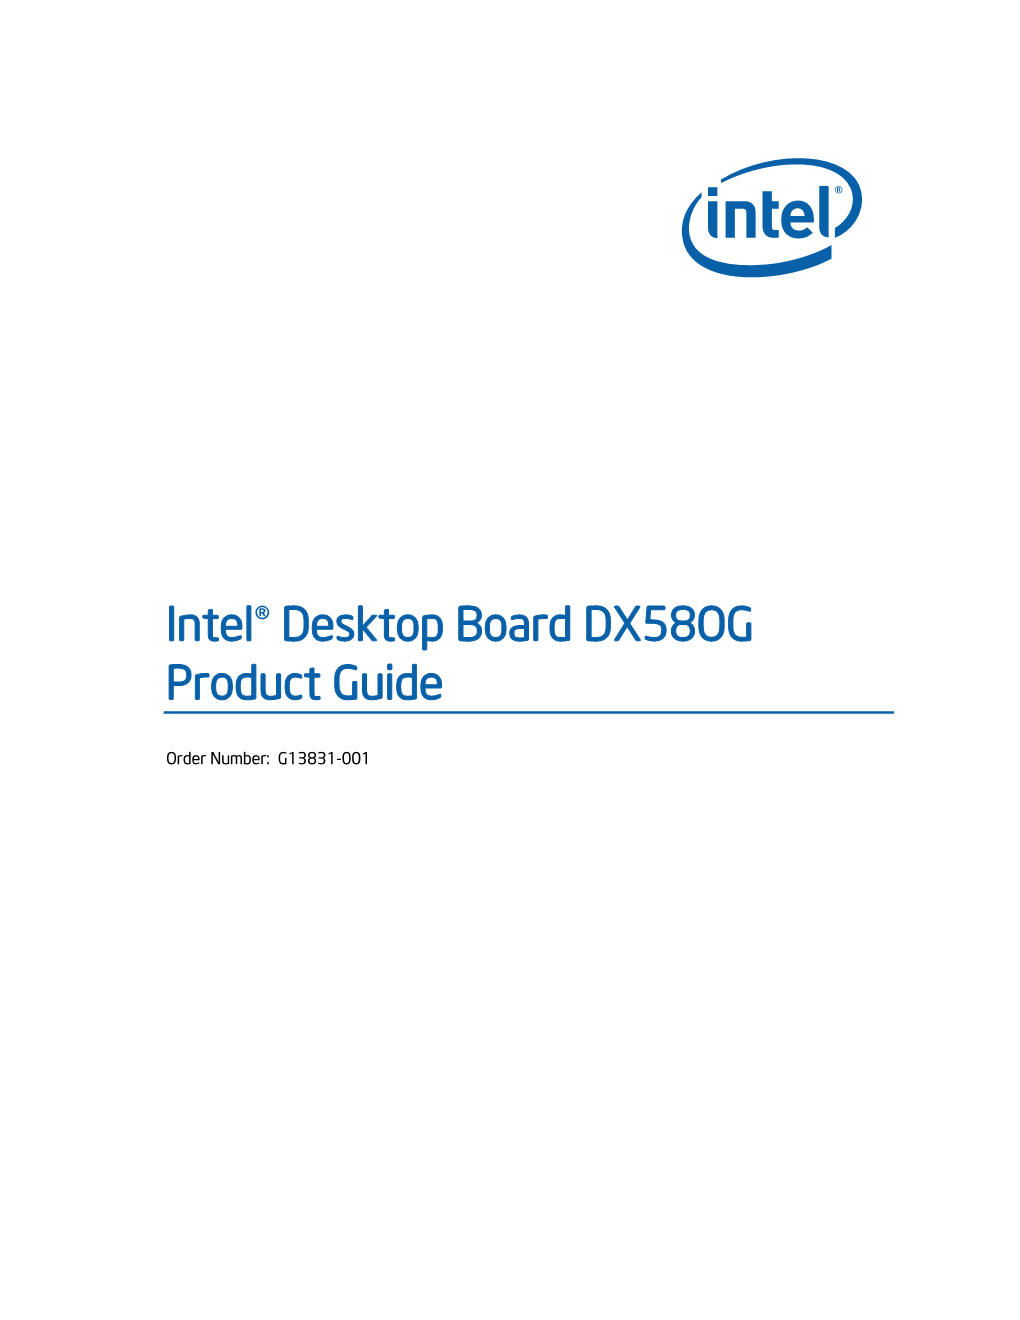 Intel® Desktop Board DX58OG Product Guide